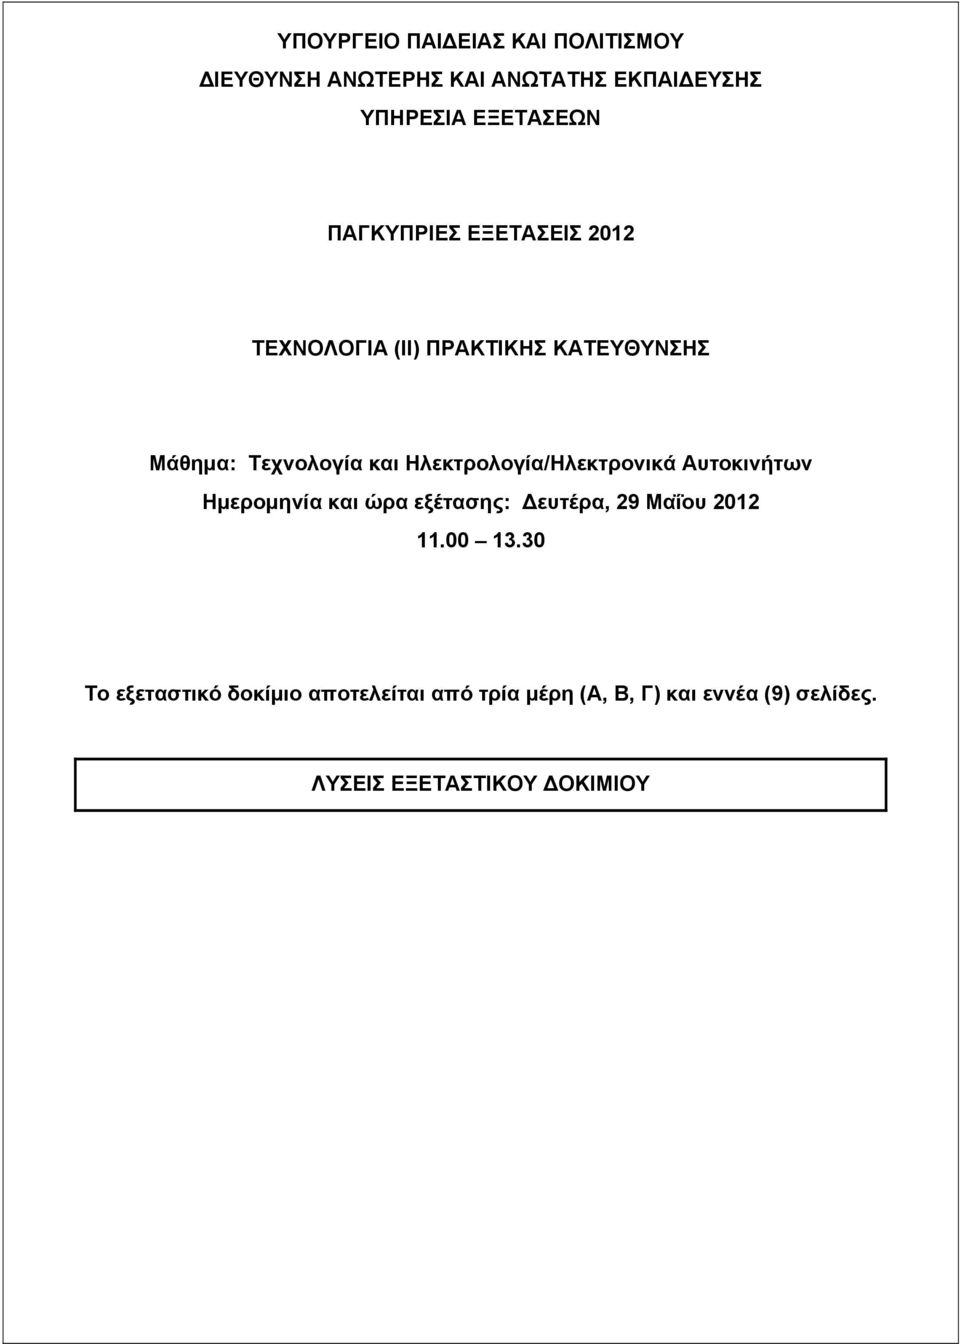 Ηλεκτρολογία/Ηλεκτρονικά Αυτοκινήτων Ημερομηνία και ώρα εξέτασης: ευτέρα, 29 Μαΐου 2012 11.00 13.